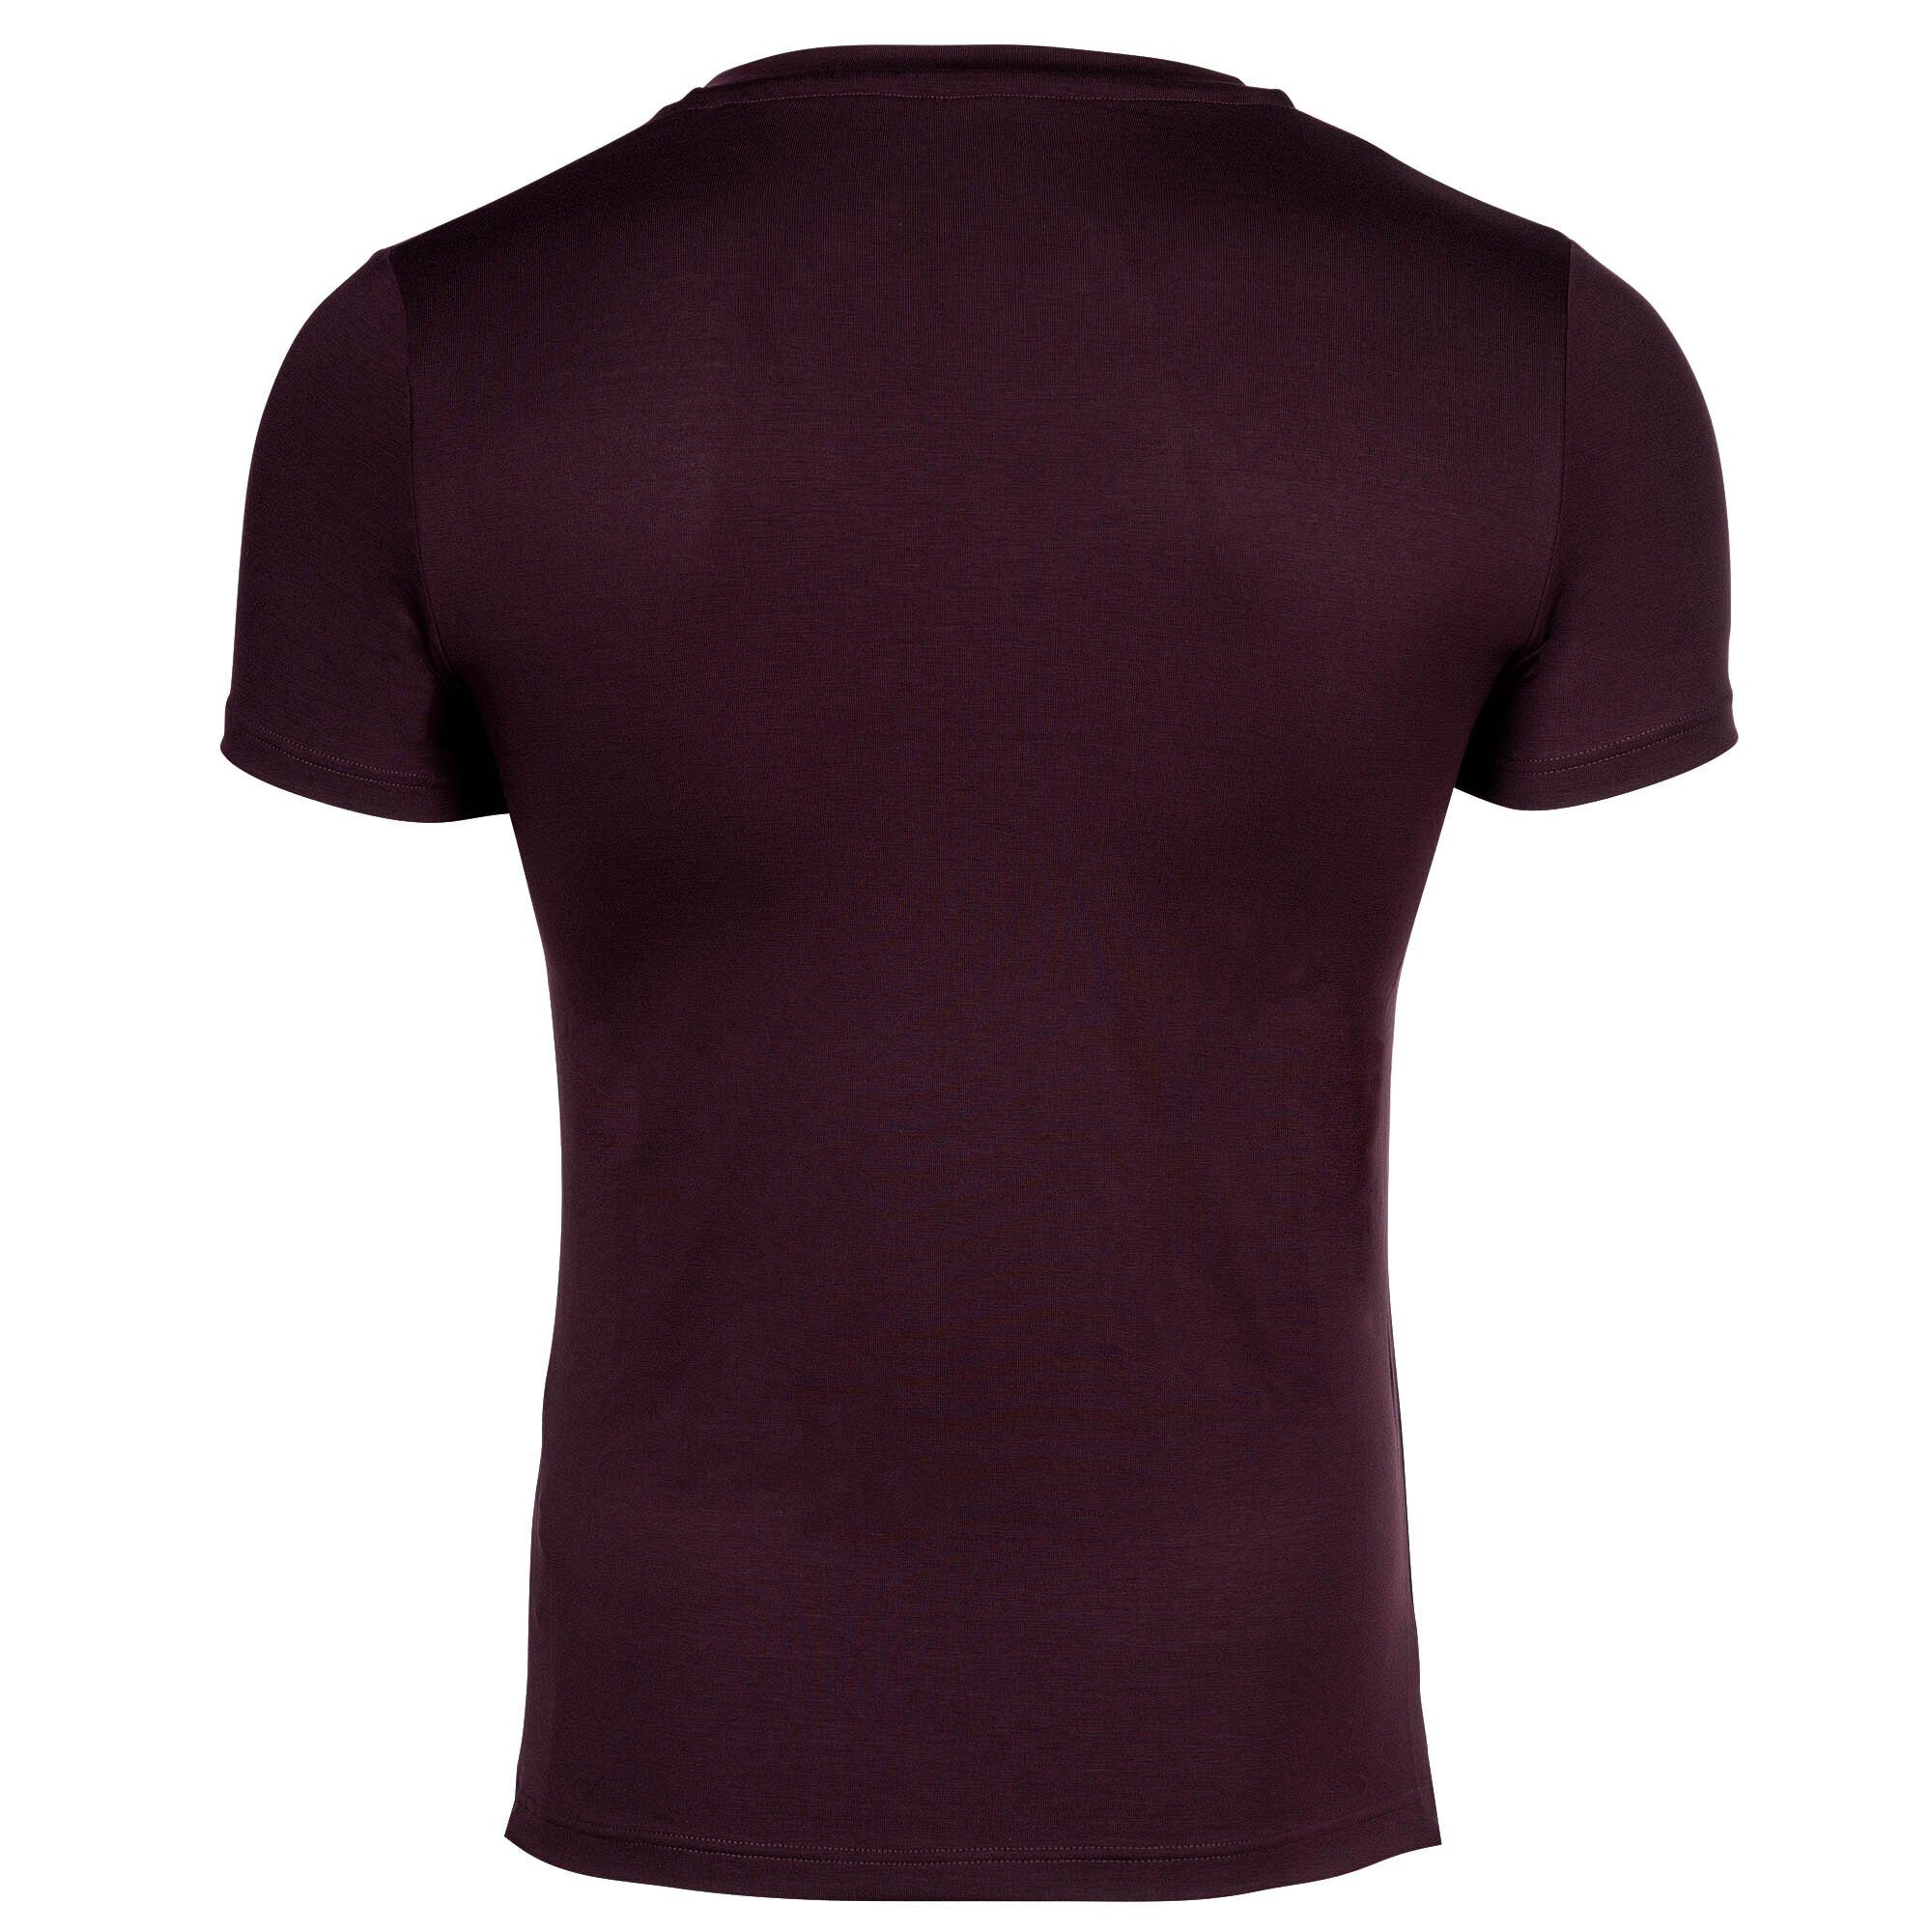 Hom T-Shirt Herren soft Neck T-Shirt Bordeaux Lyocell Tee-Shirt V - V